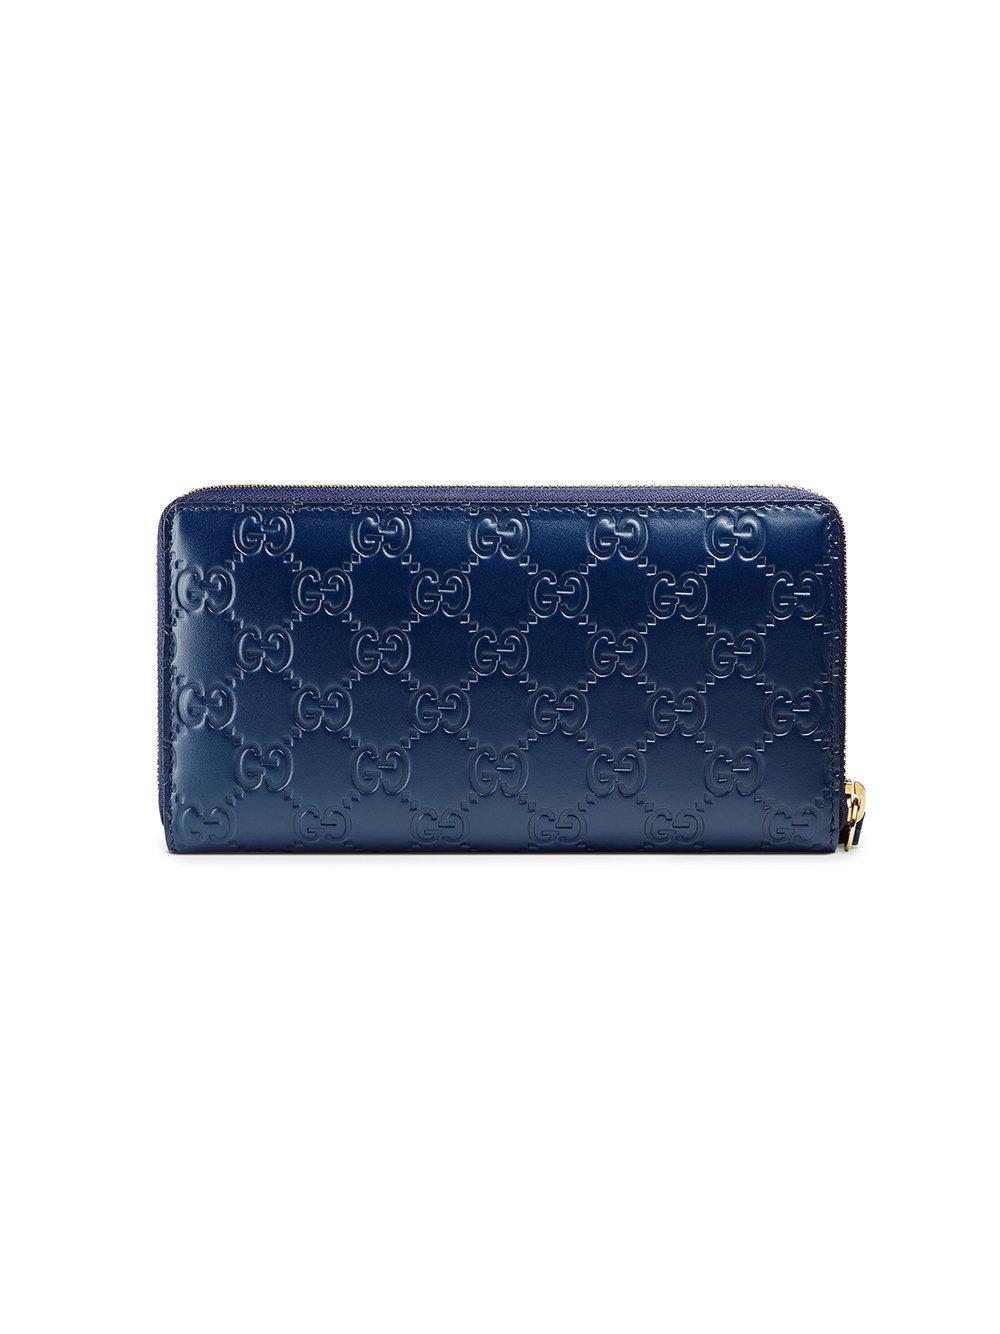 gucci signature wallet blue